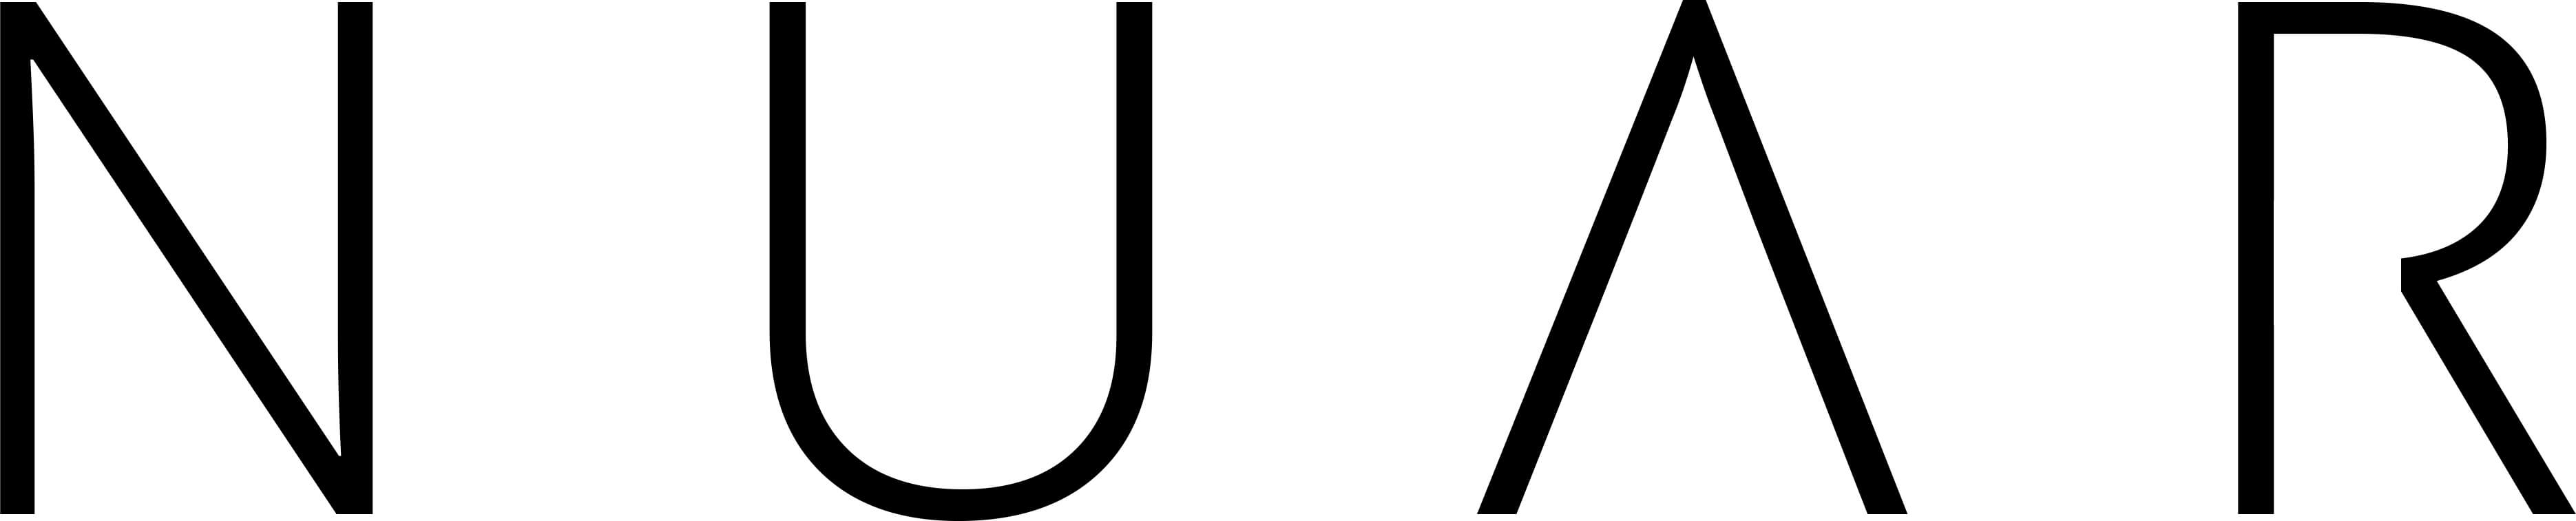 Nuar Studio logo